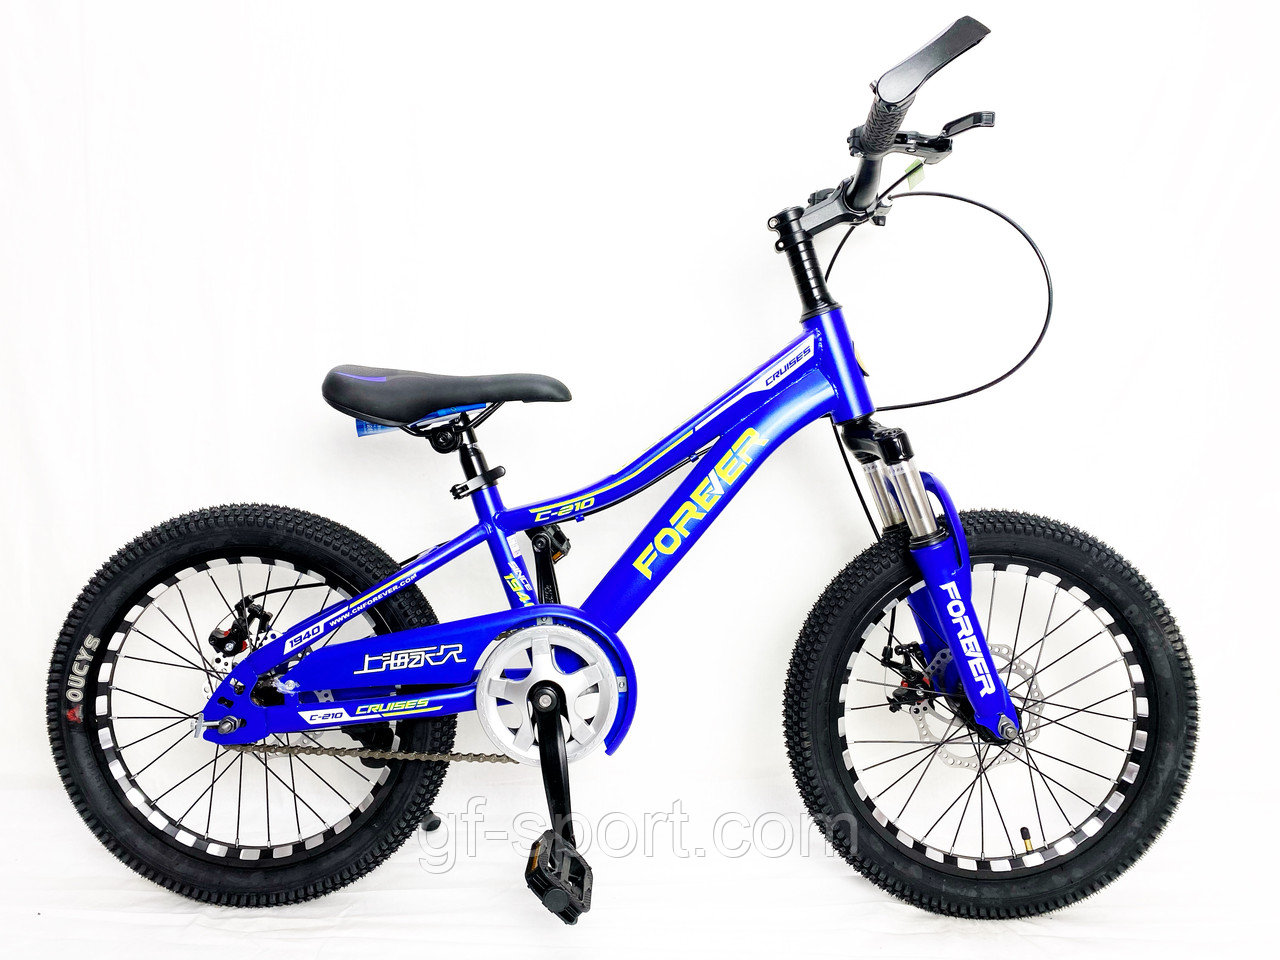 Велосипед Forever на дисковых тормозах синий оригинал детский с холостым ходом 18 размер (542-18)